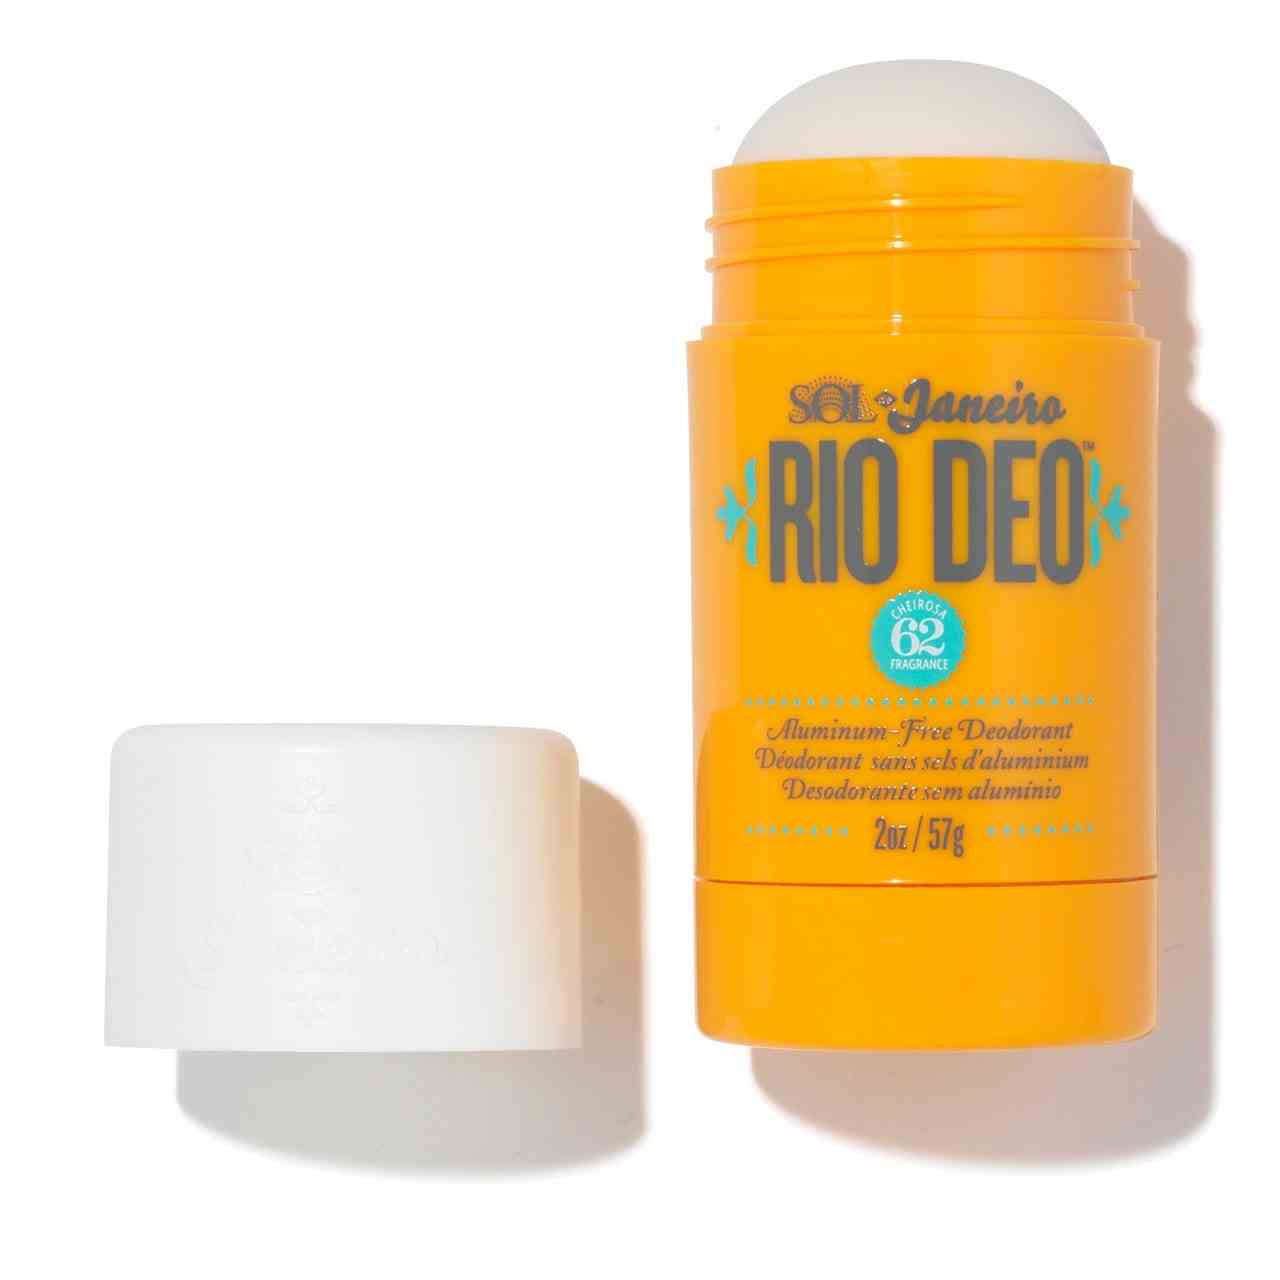 Eine offene Tube Sol de Janeiro Rio Deo aluminiumfreies Deodorant auf weißem Hintergrund